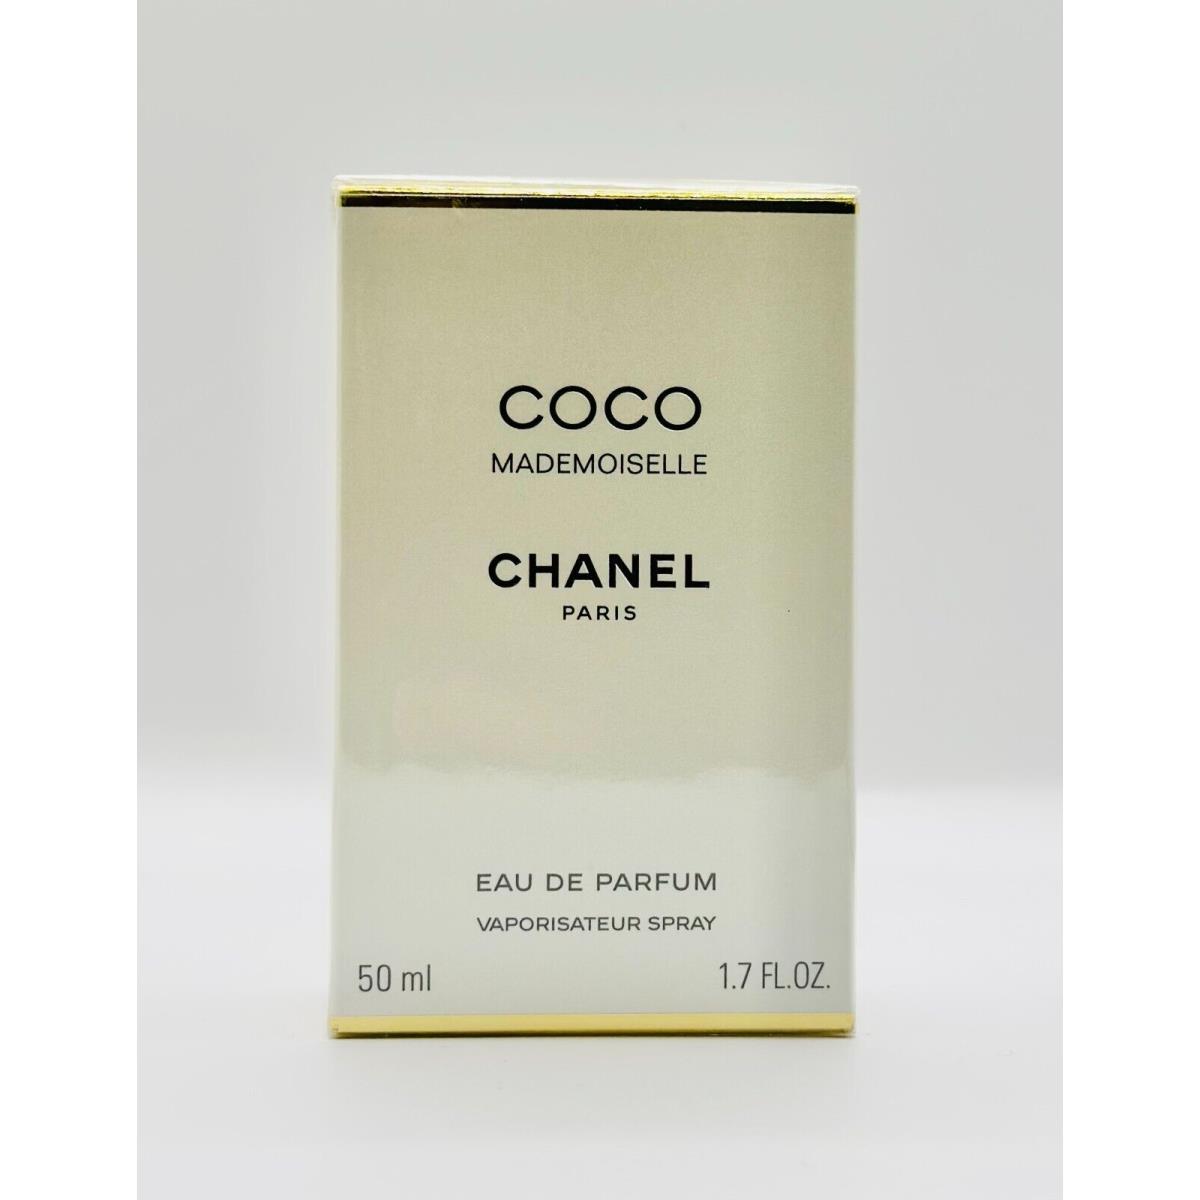 Coco Chanel Mademoiselle Eau de Parfum Vaporisateur Spray 1.7 fl oz